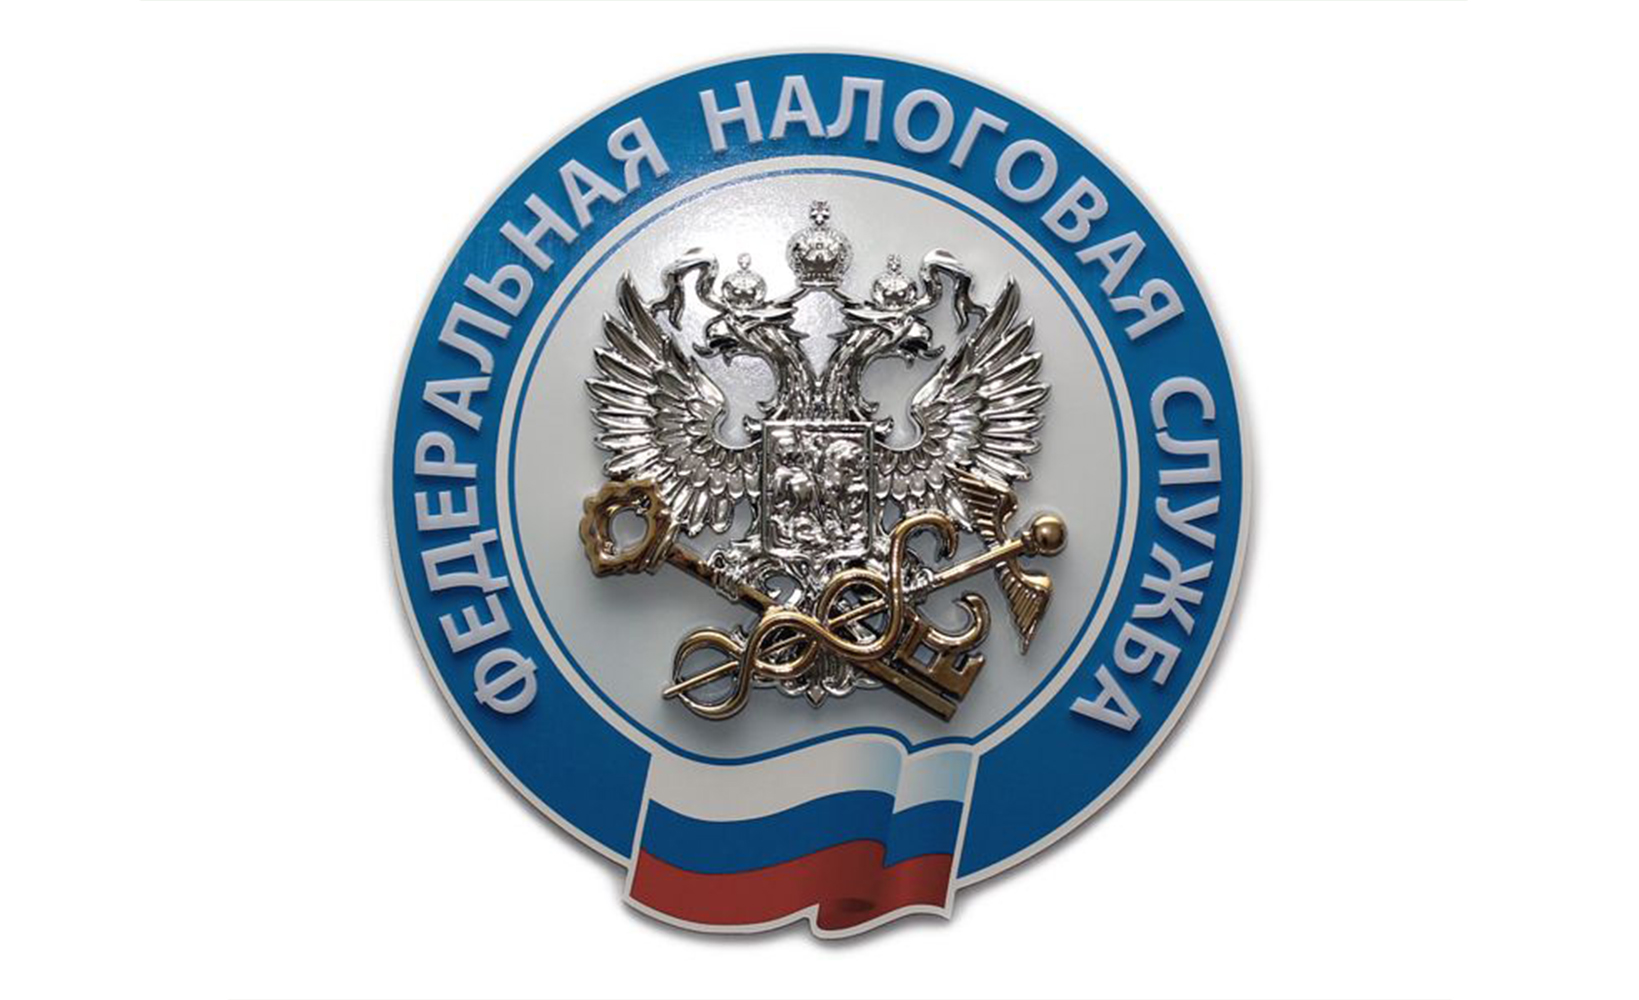 Удостоверяющий центр ФНС России предоставляет бесплатное программное обеспечение для работы с электронной подписью